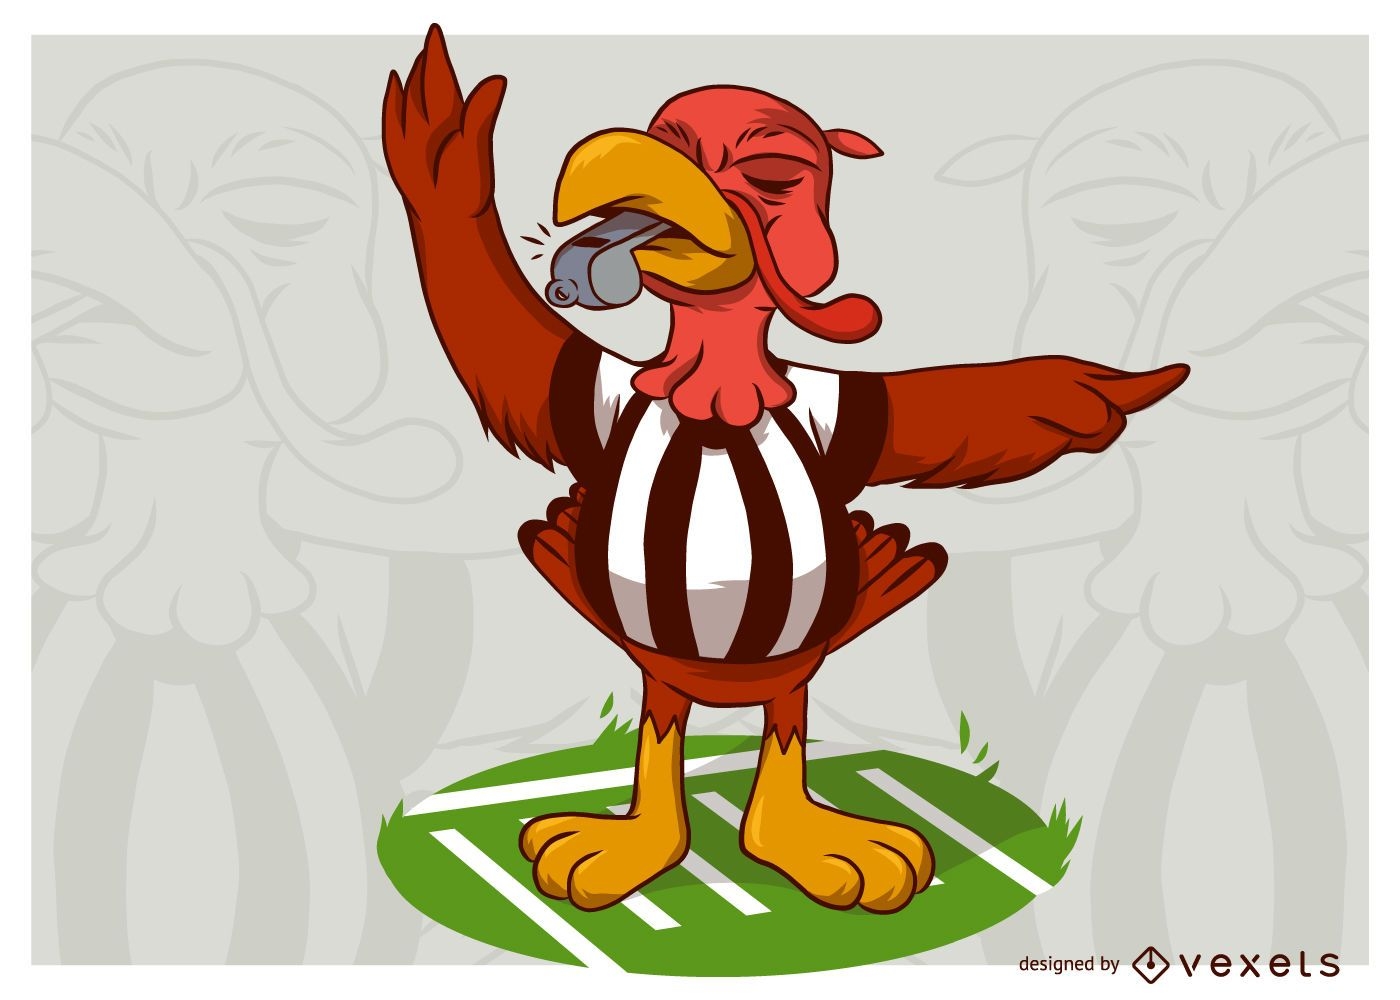 Árbitro de futebol da Turquia em ação de graças em uma ilustração de campo